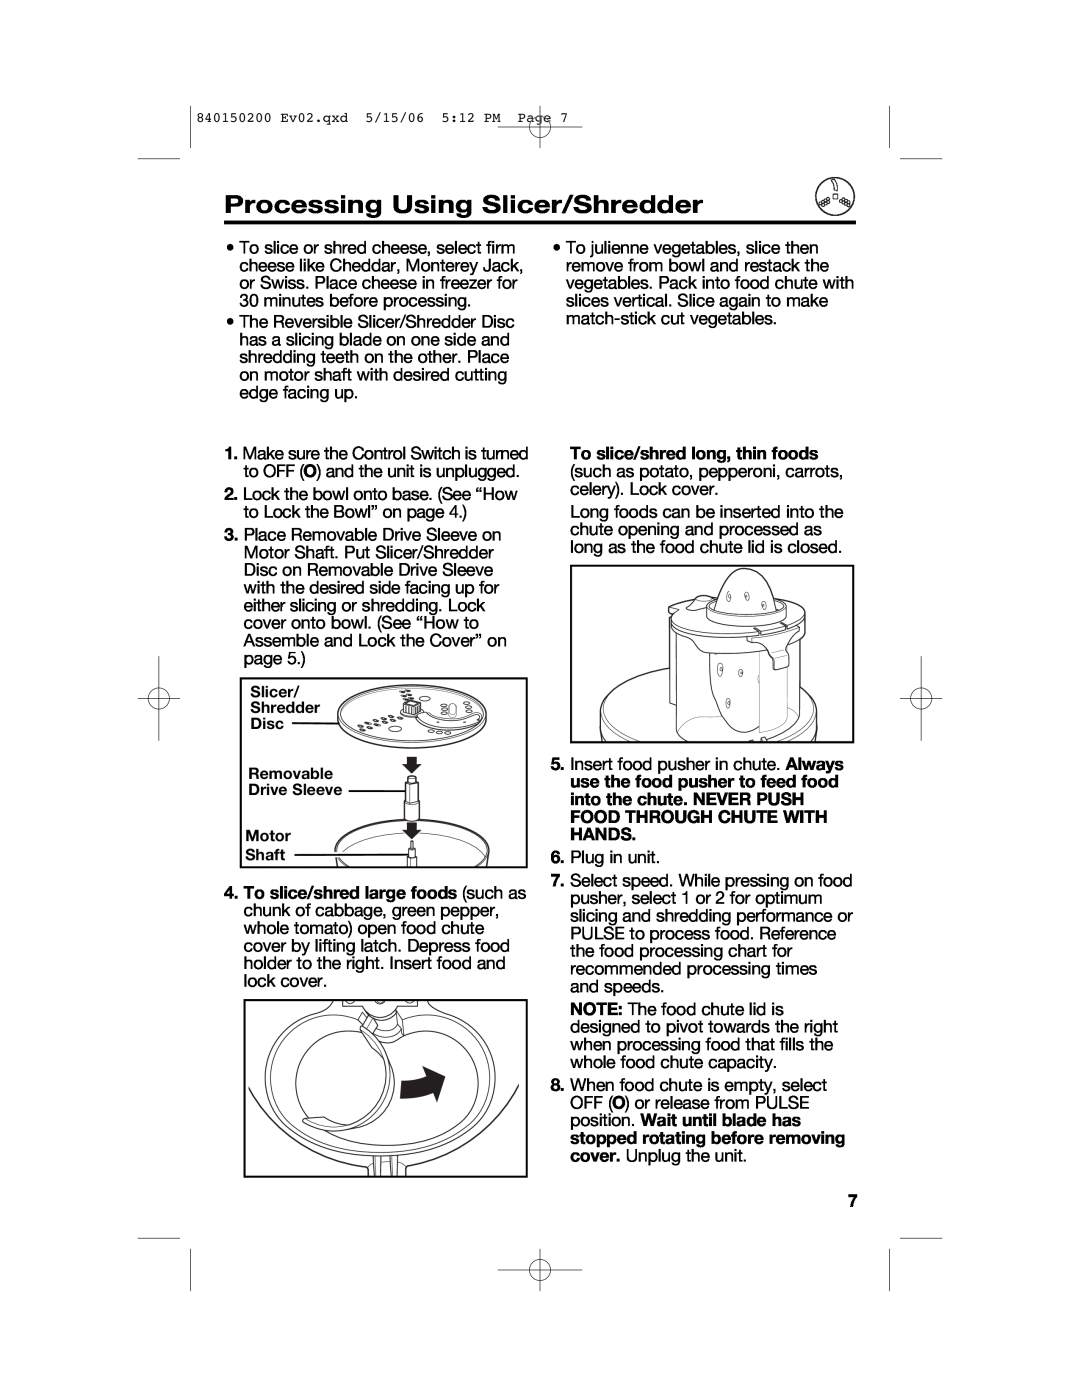 Proctor-Silex 840150200 manual Processing Using Slicer/Shredder, Slicer Shredder Disc Removable Drive Sleeve Motor Shaft 